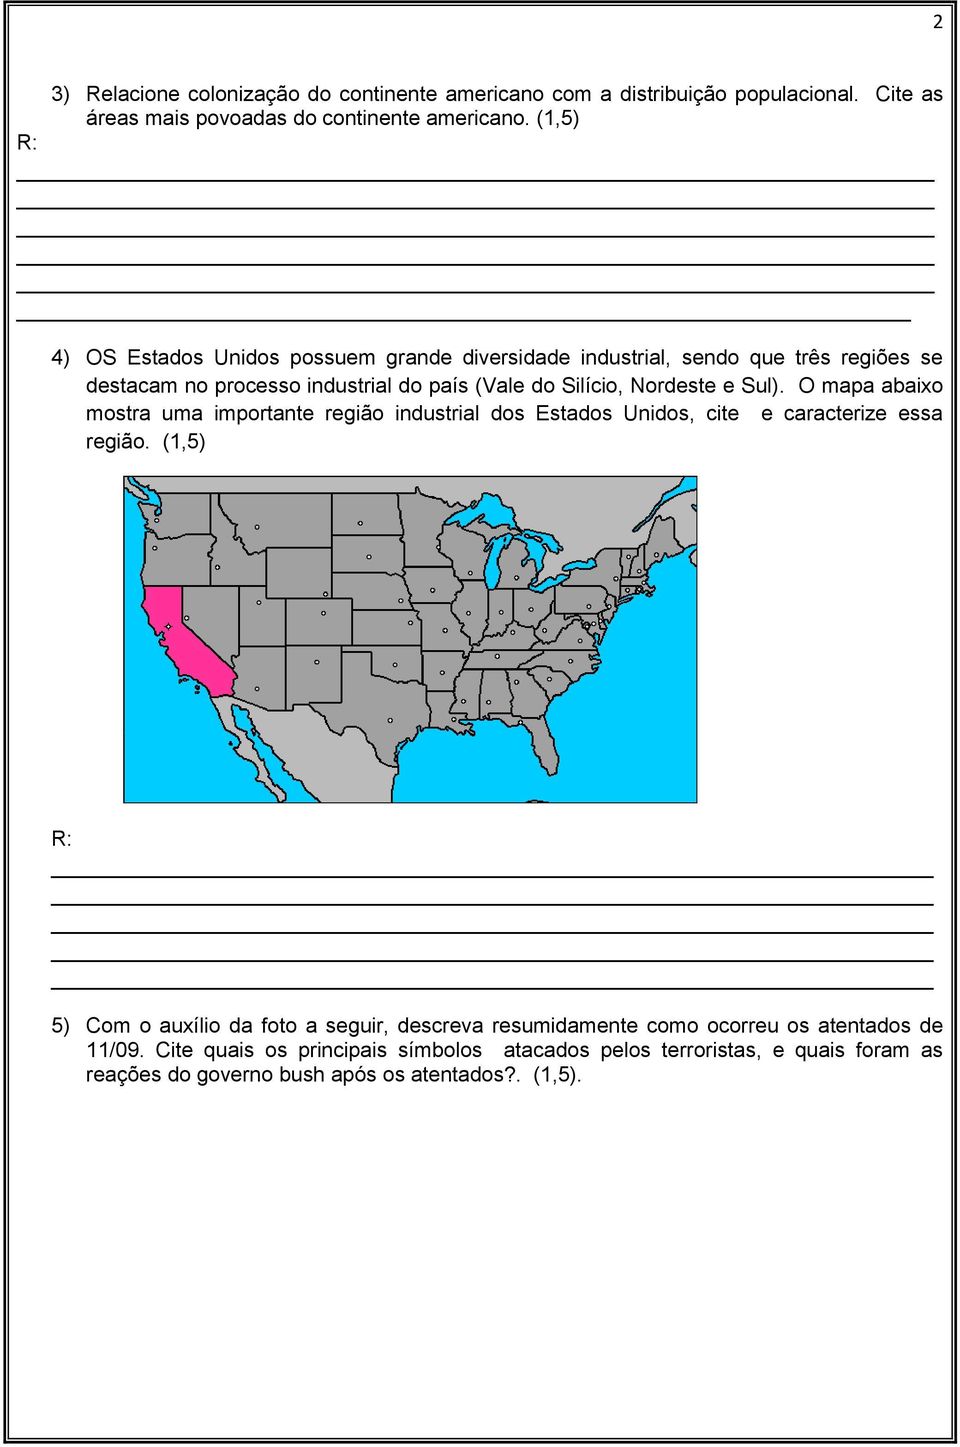 e Sul). O mapa abaixo mostra uma importante região industrial dos Estados Unidos, cite e caracterize essa região.